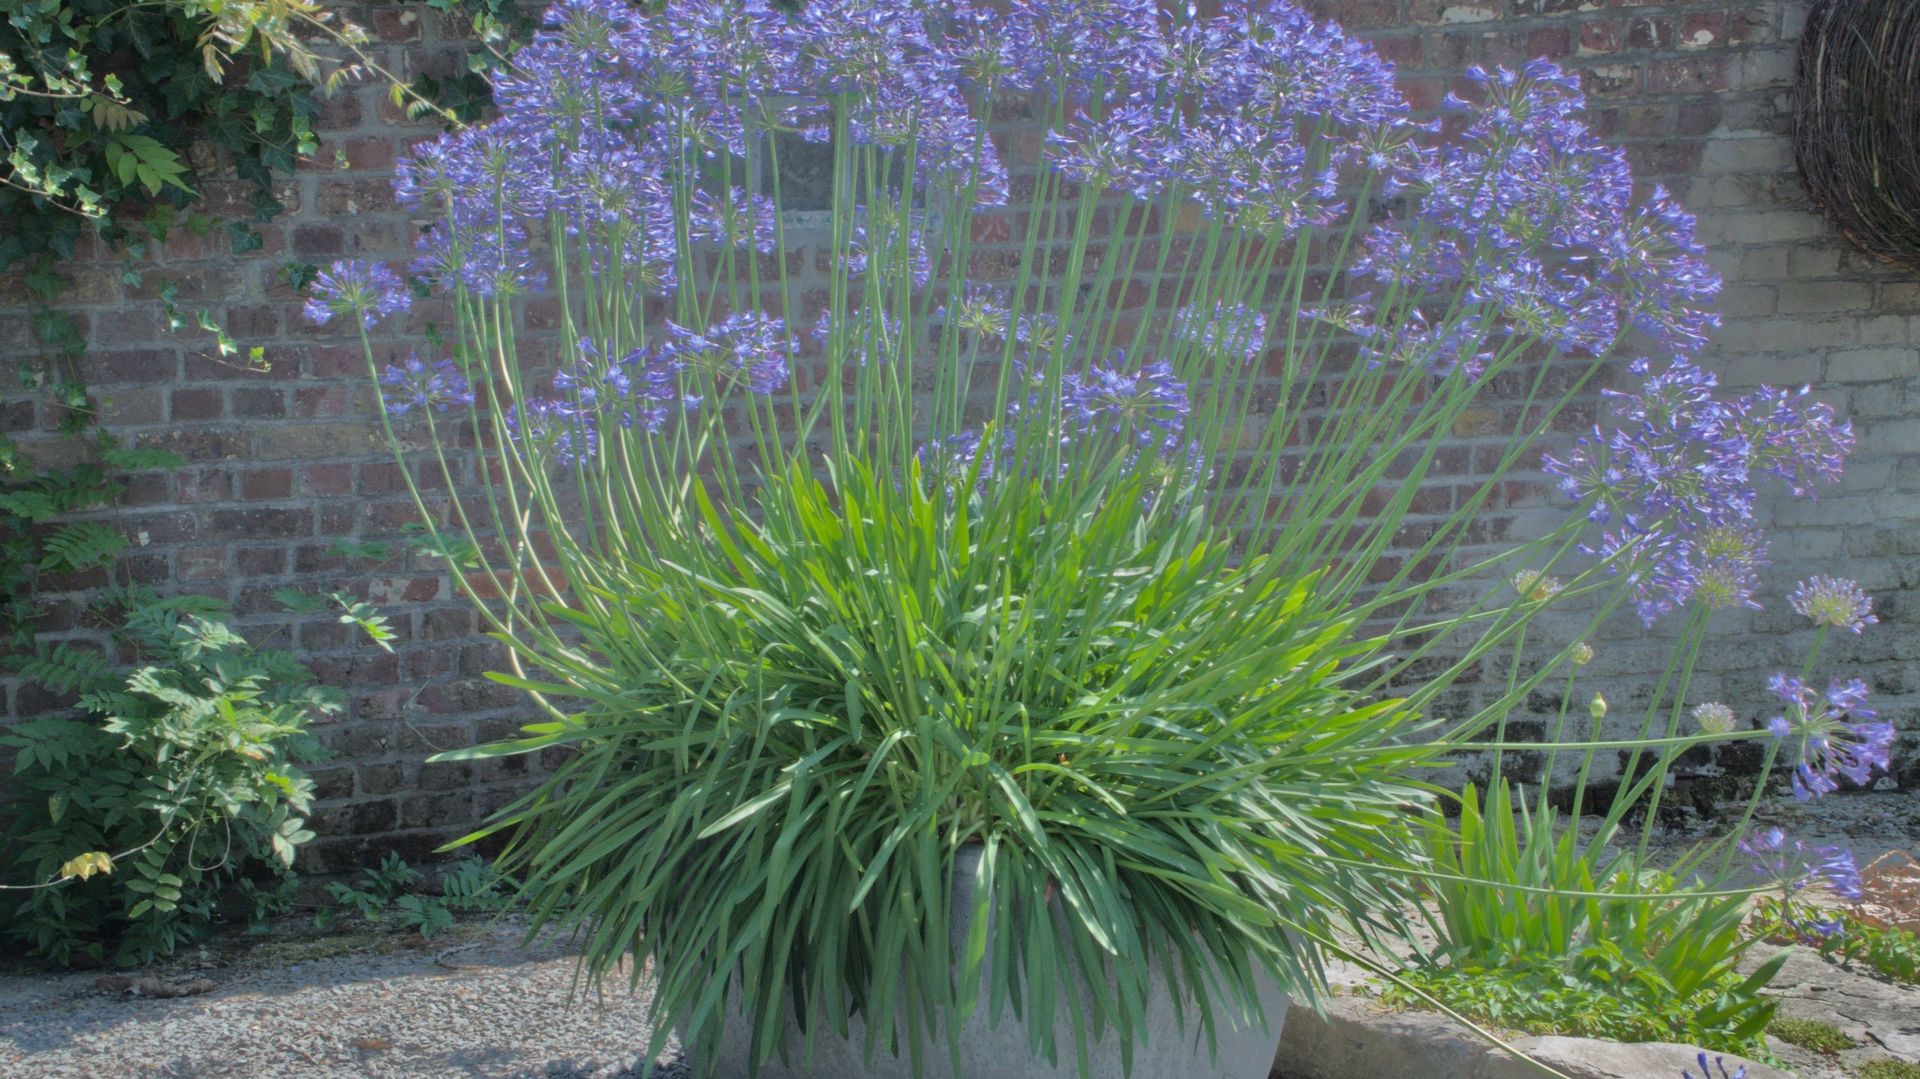 Plusieurs pieds de la même variété plantés ensemble dans un large bac forment à terme un ensemble imposant, pouvant produire un nuage bleu composé de dizaines de hampes florales.